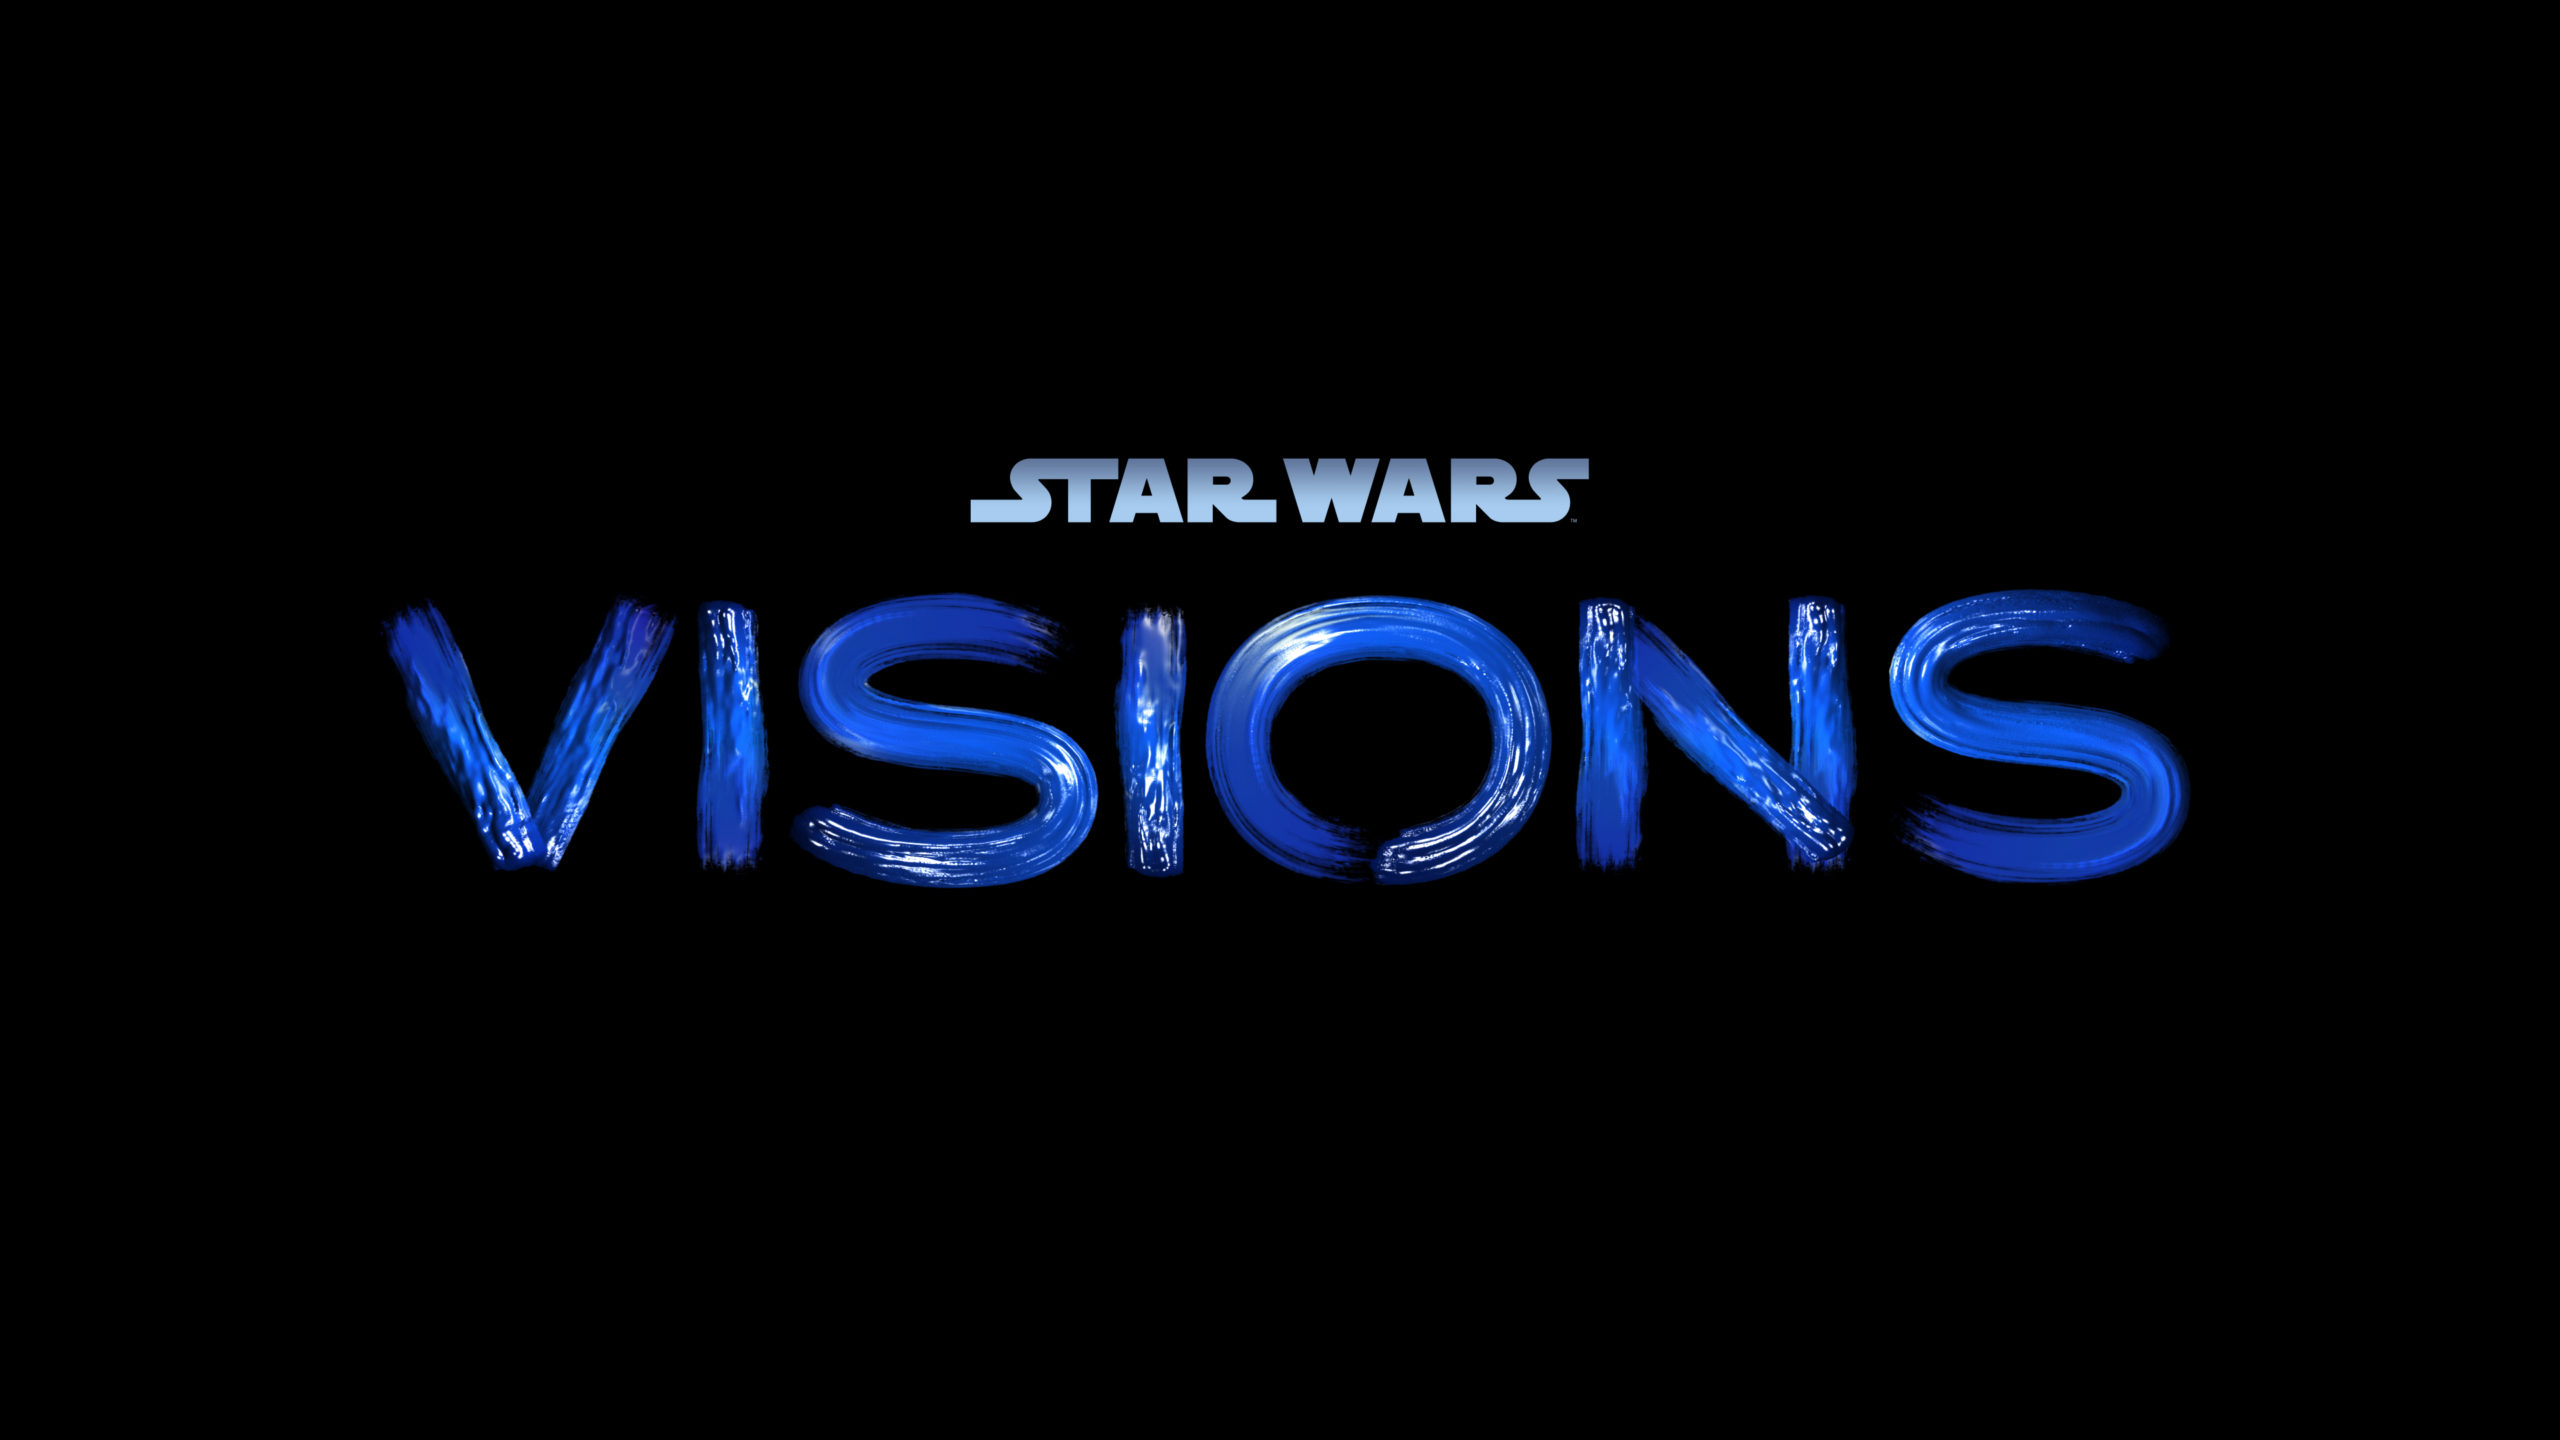 Star Wars Visionsj title screen